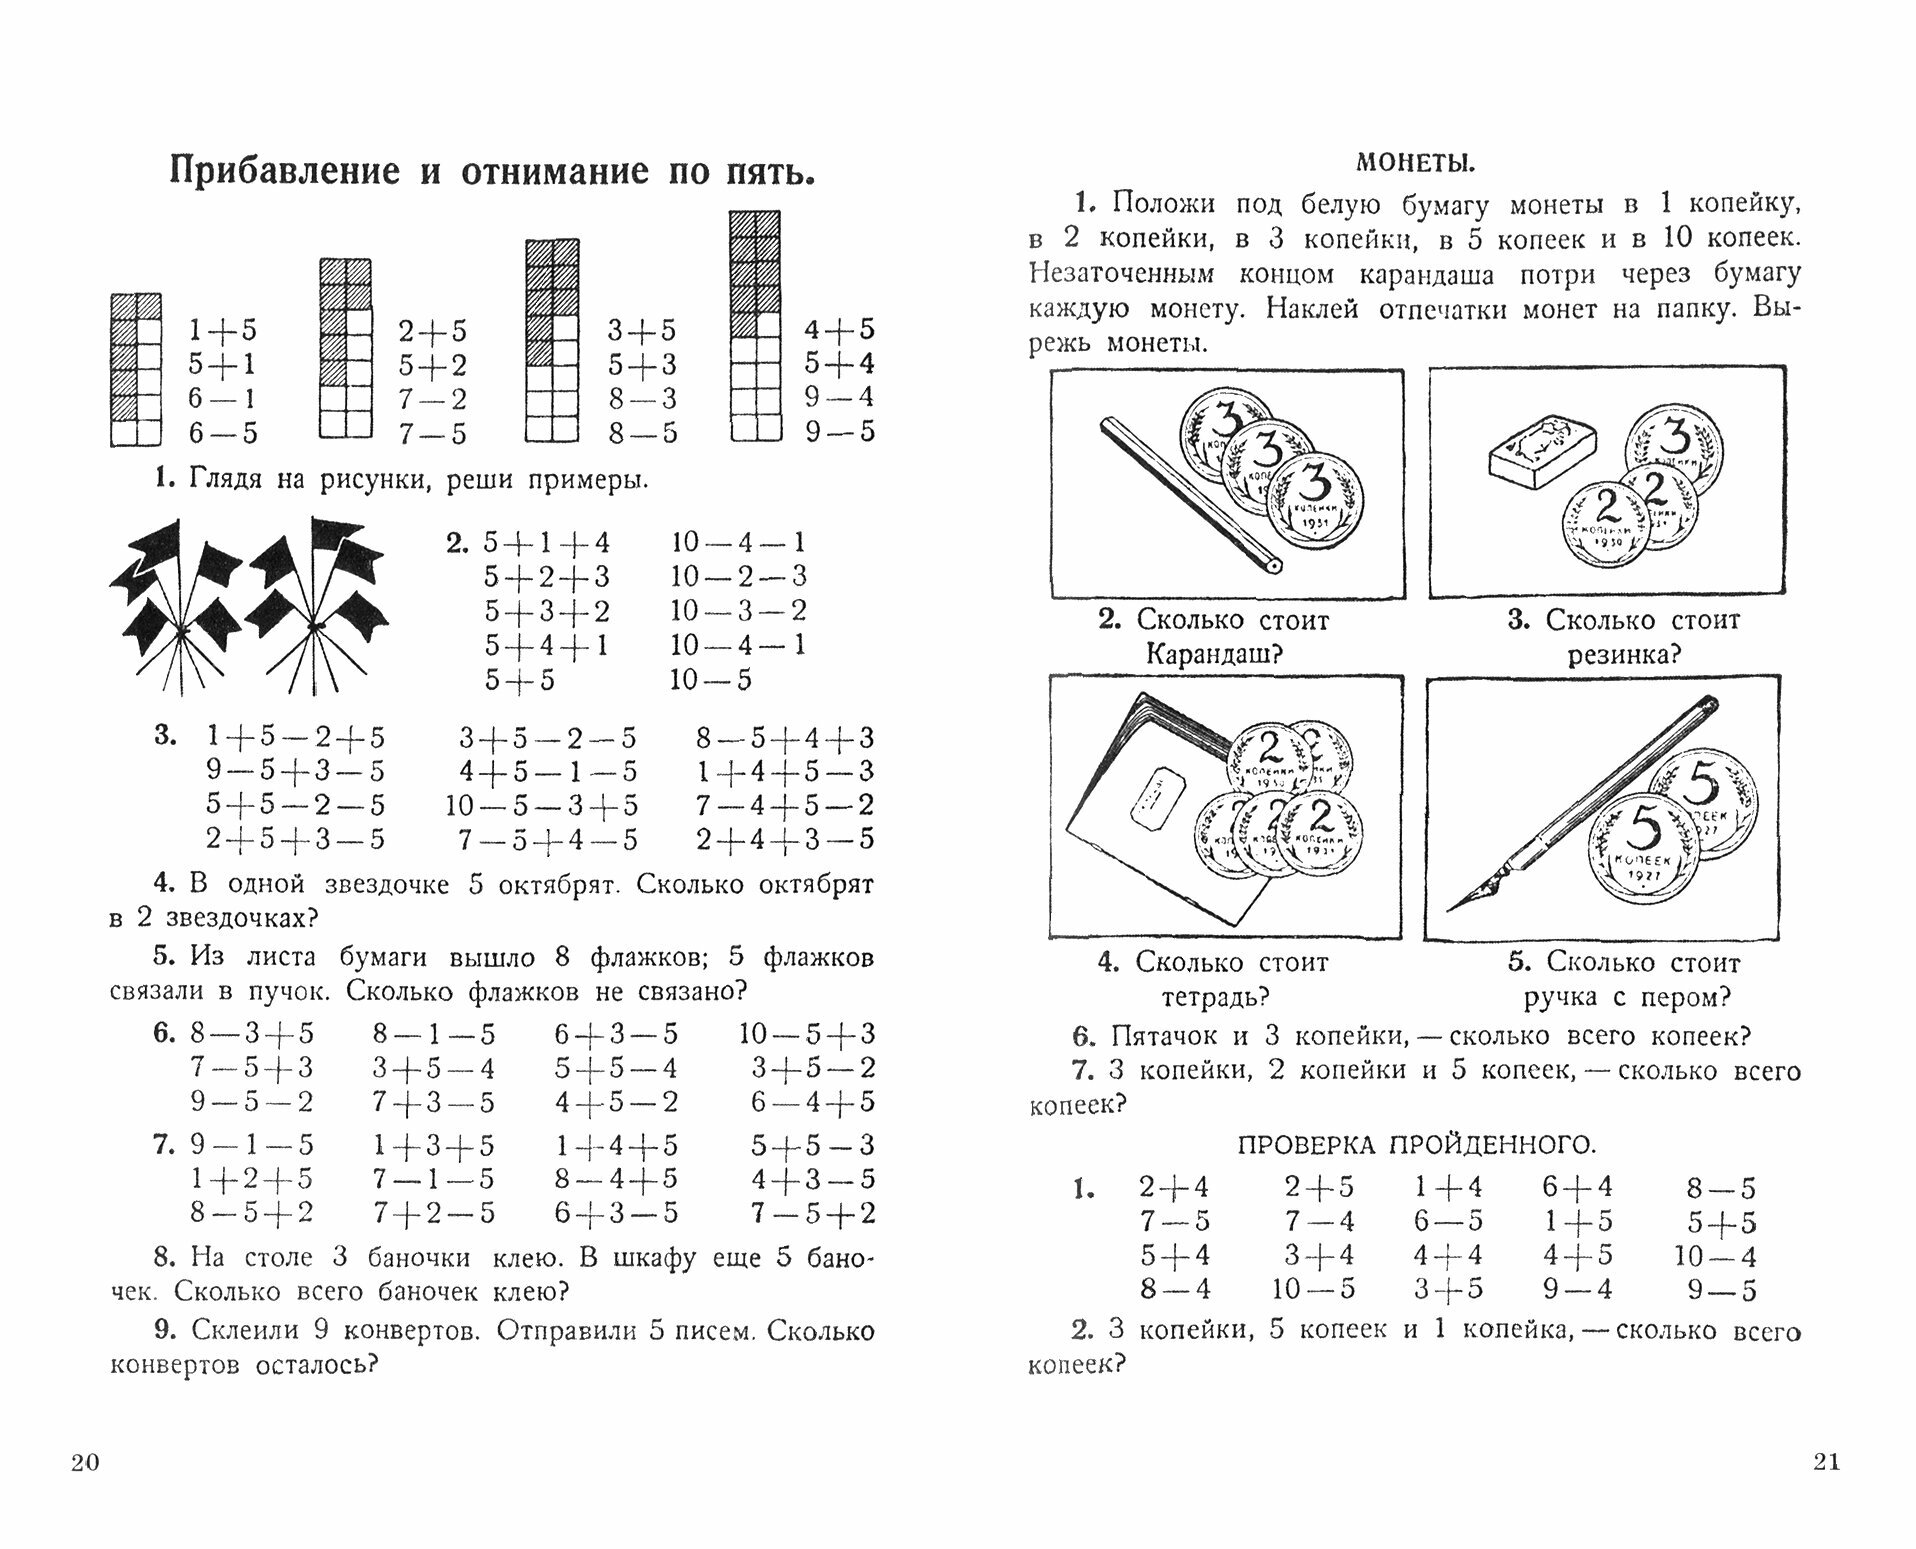 Учебник арифметики для начальной школы. Часть I. 1933 год - фото №9